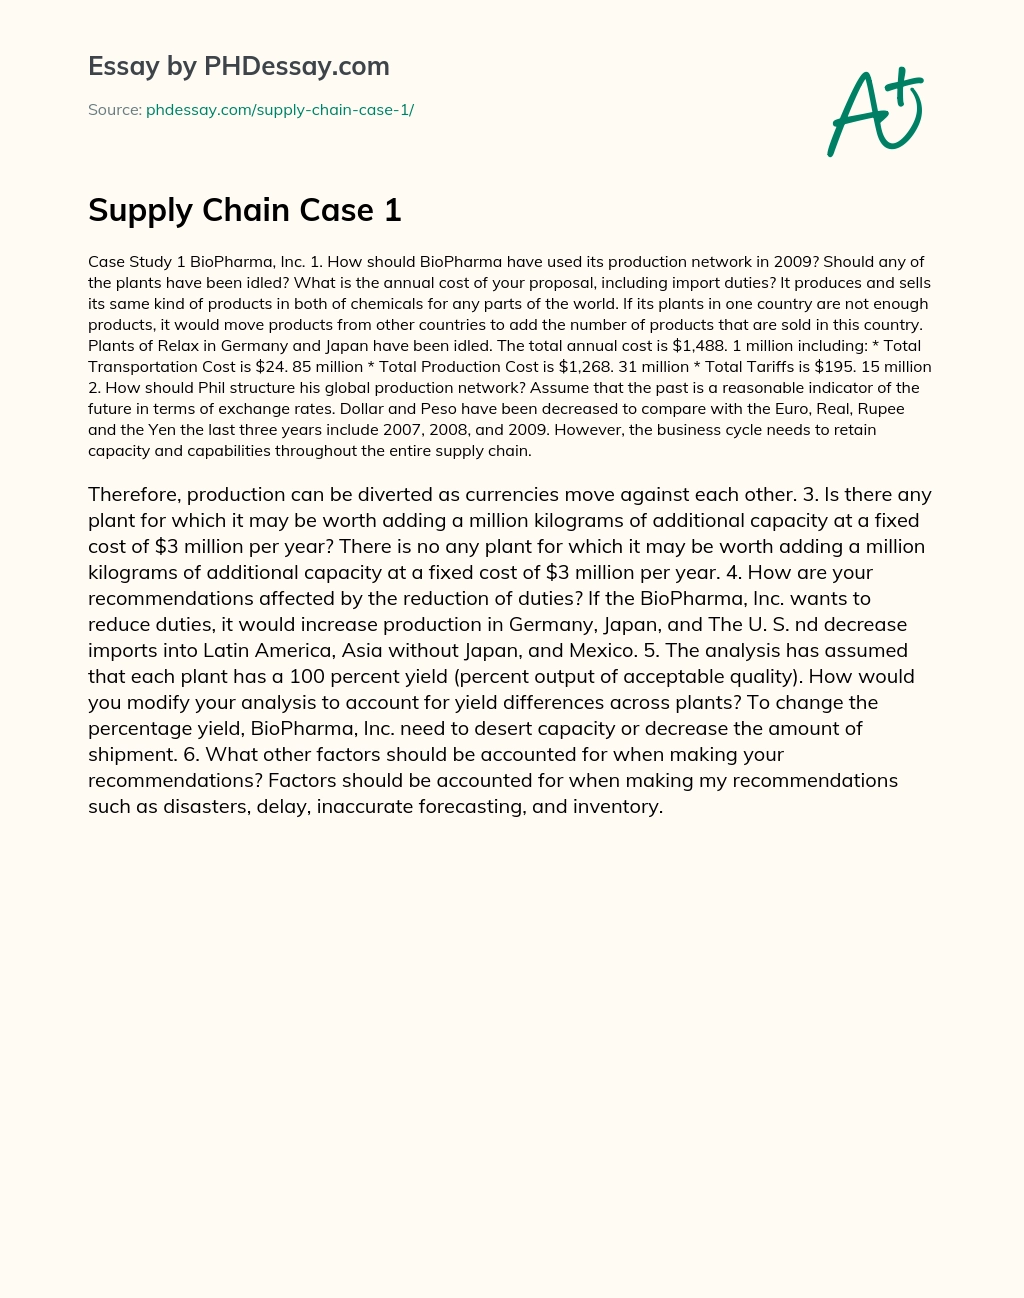 Supply Chain Case 1 essay